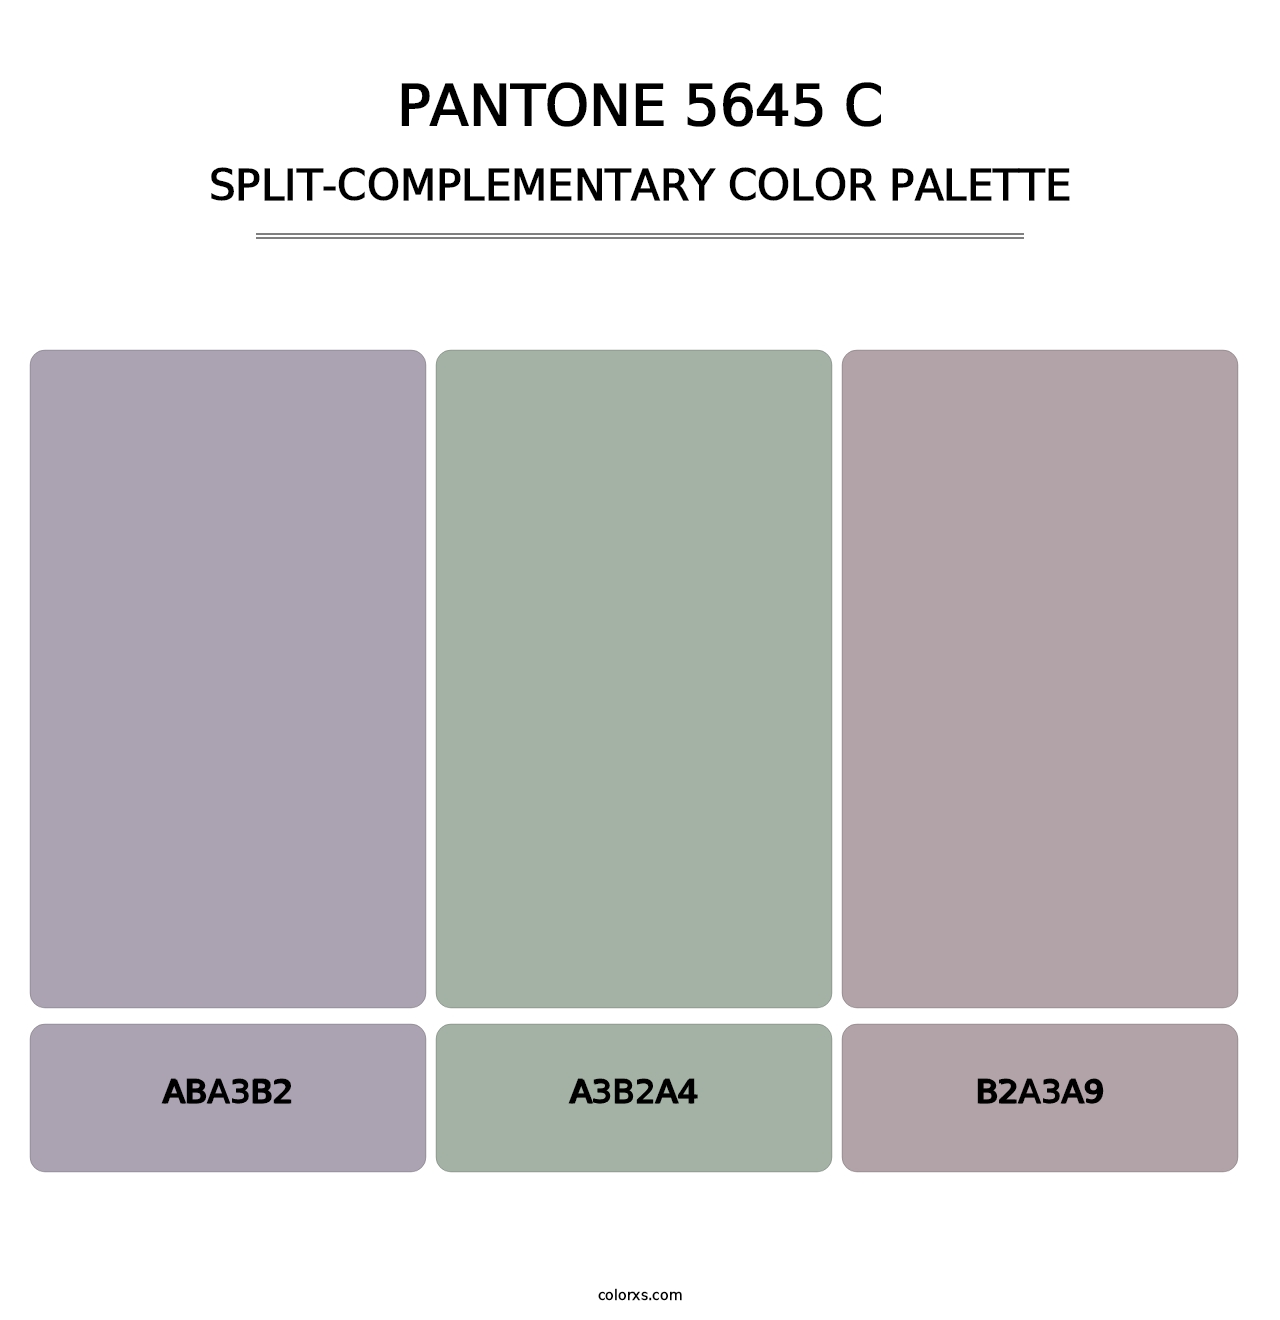 PANTONE 5645 C - Split-Complementary Color Palette